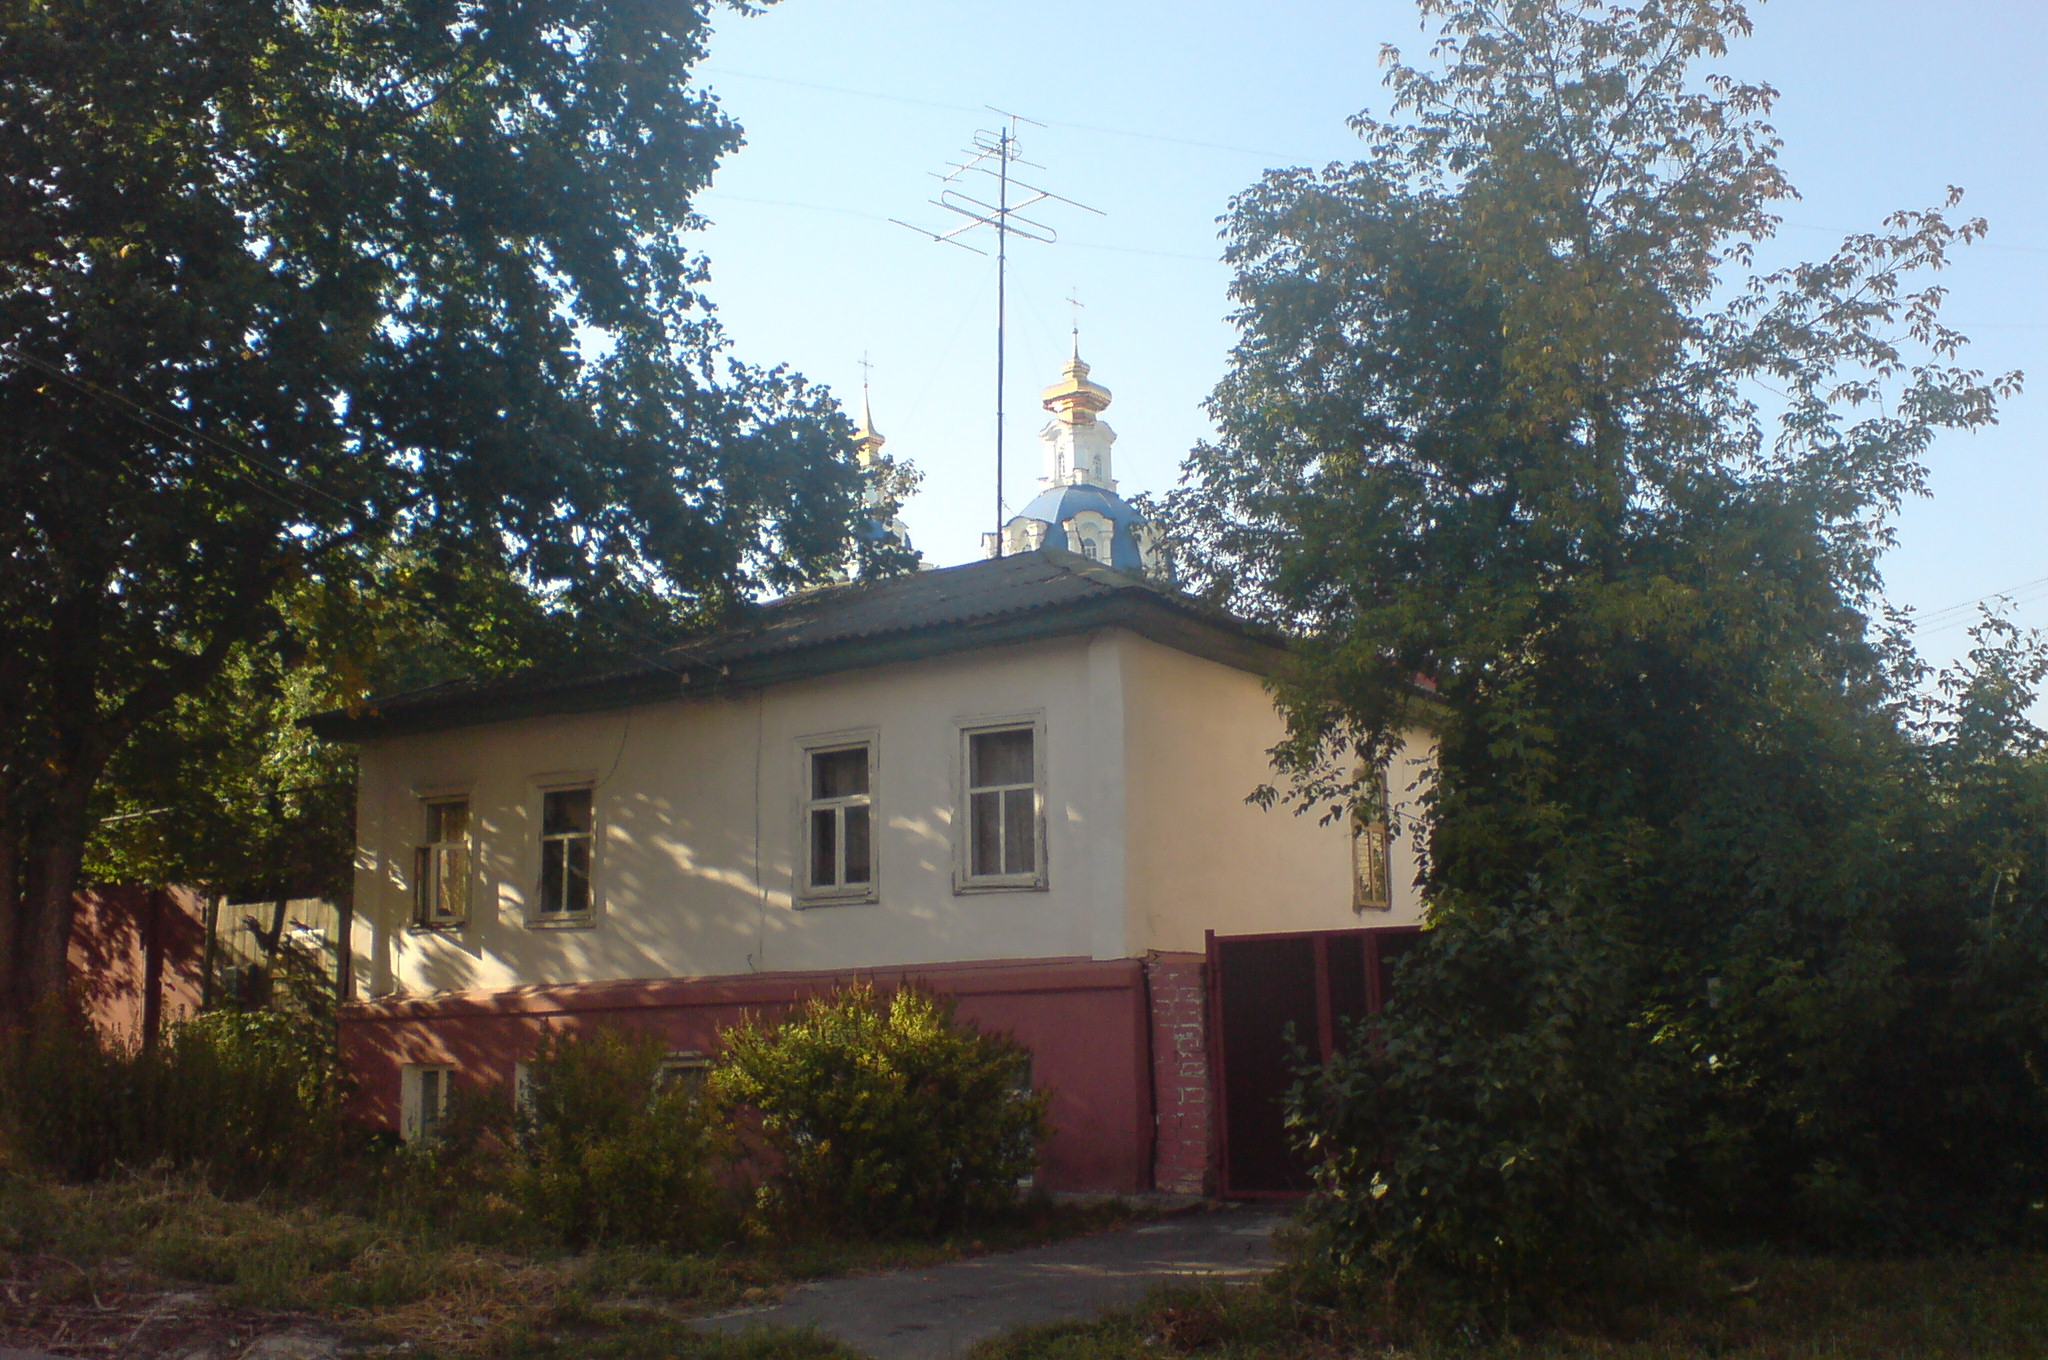 Дом, в котором Даниил Хармс жил в Курске